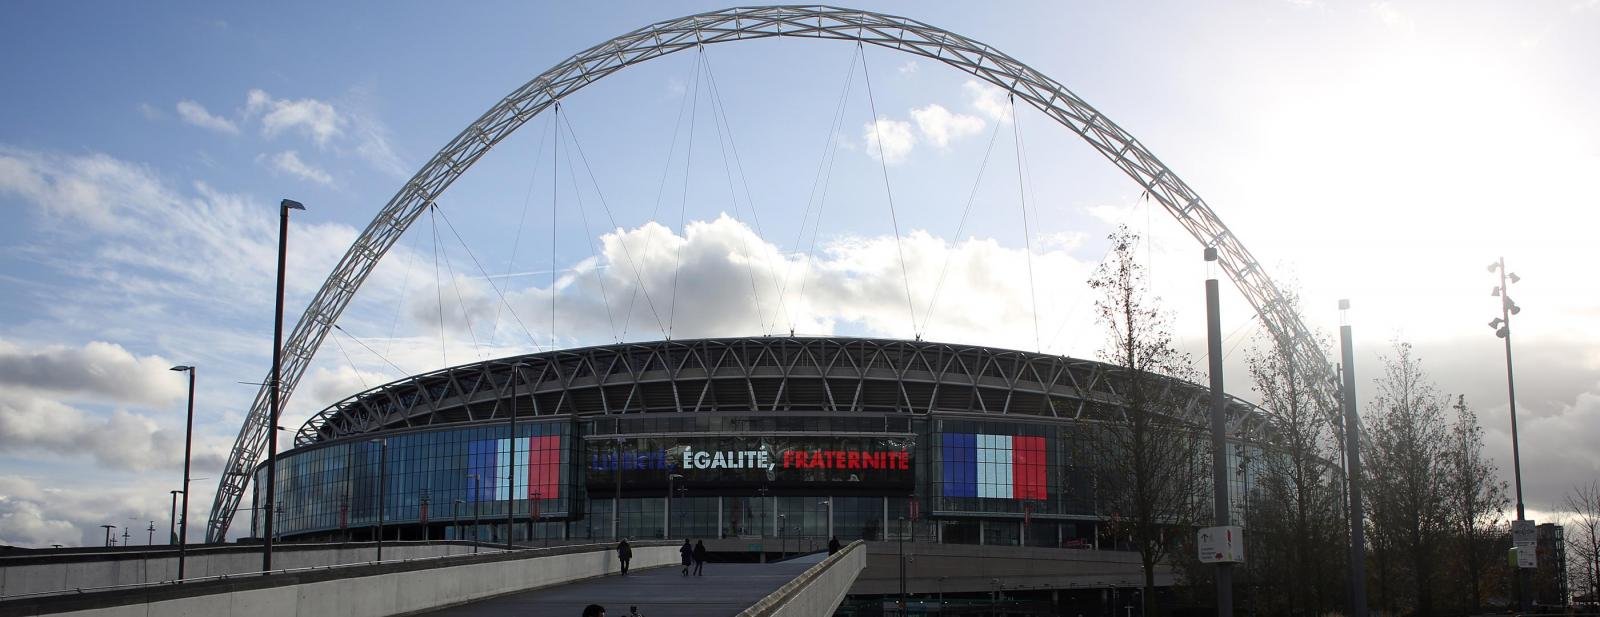 Sir Trevor Brooking and Matt Le Tissier launch grassroots football scheme at Wembley